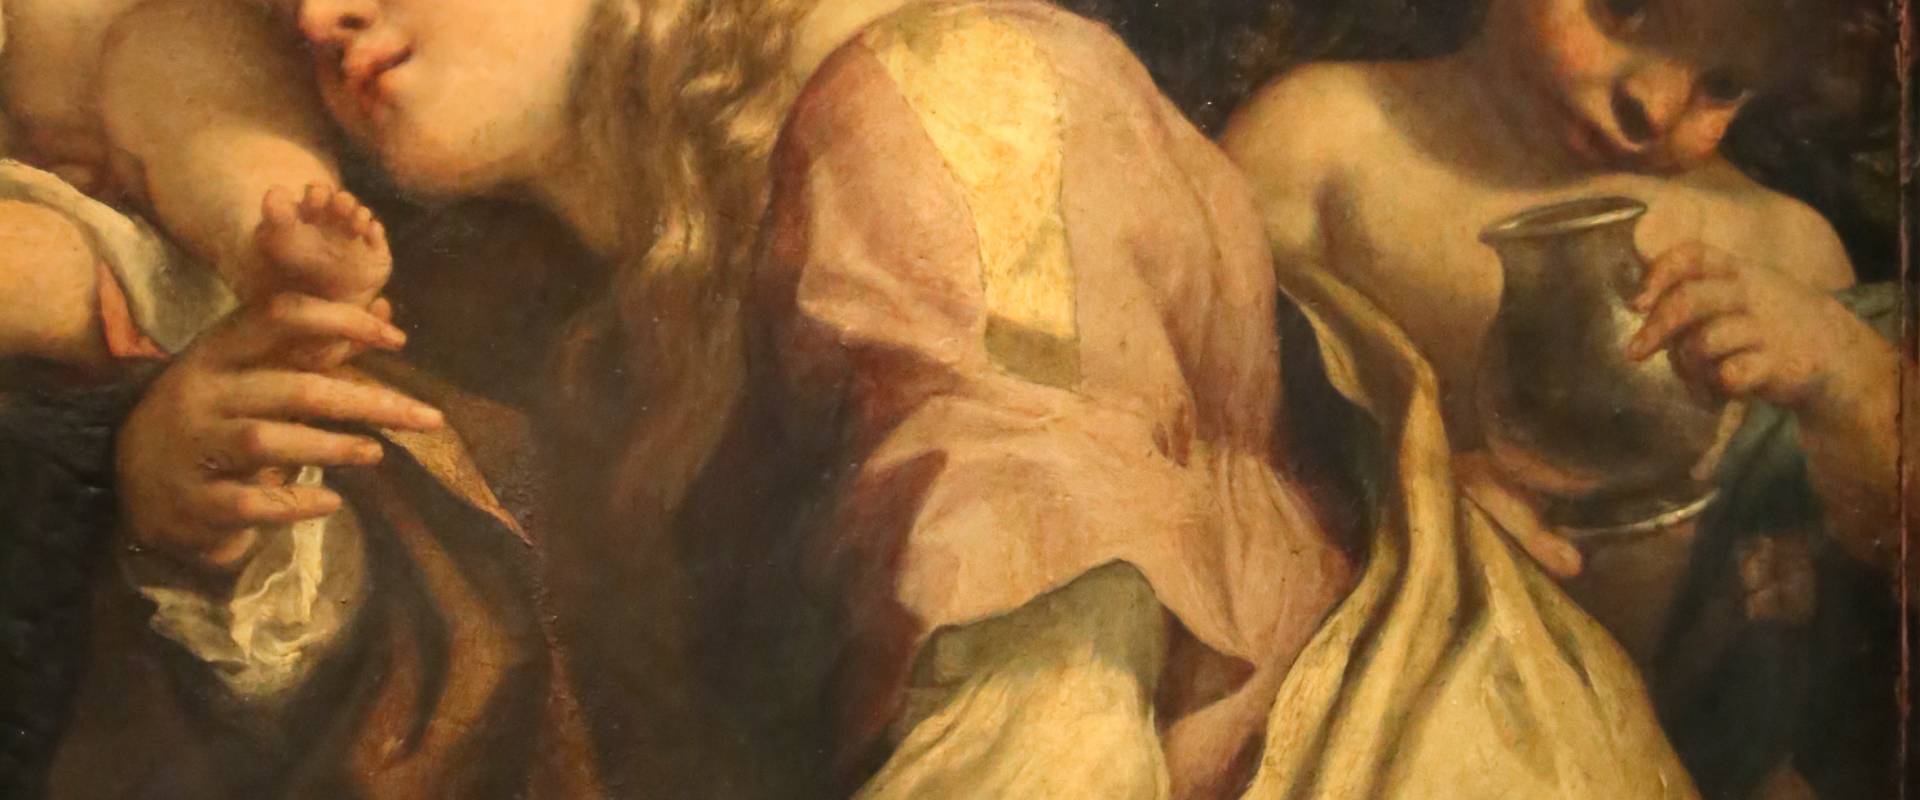 Correggio, madonna di san girolamo, o il giorno, 1528 ca. 05 maddalena foto di Sailko